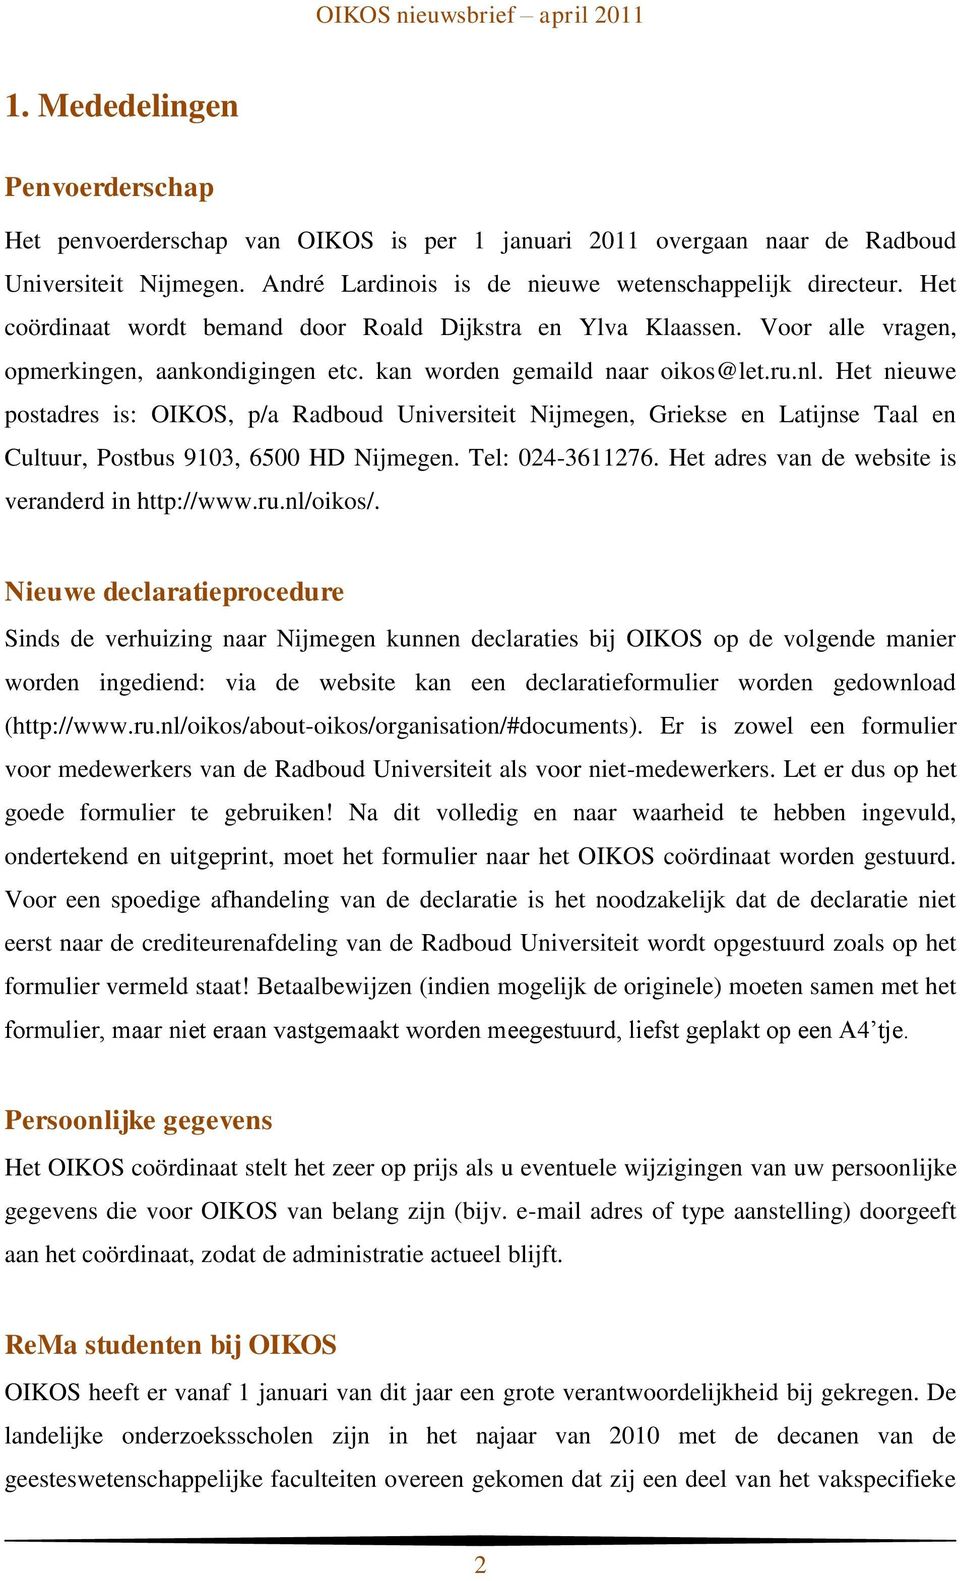 Het nieuwe postadres is: OIKOS, p/a Radboud Universiteit Nijmegen, Griekse en Latijnse Taal en Cultuur, Postbus 9103, 6500 HD Nijmegen. Tel: 024-3611276.